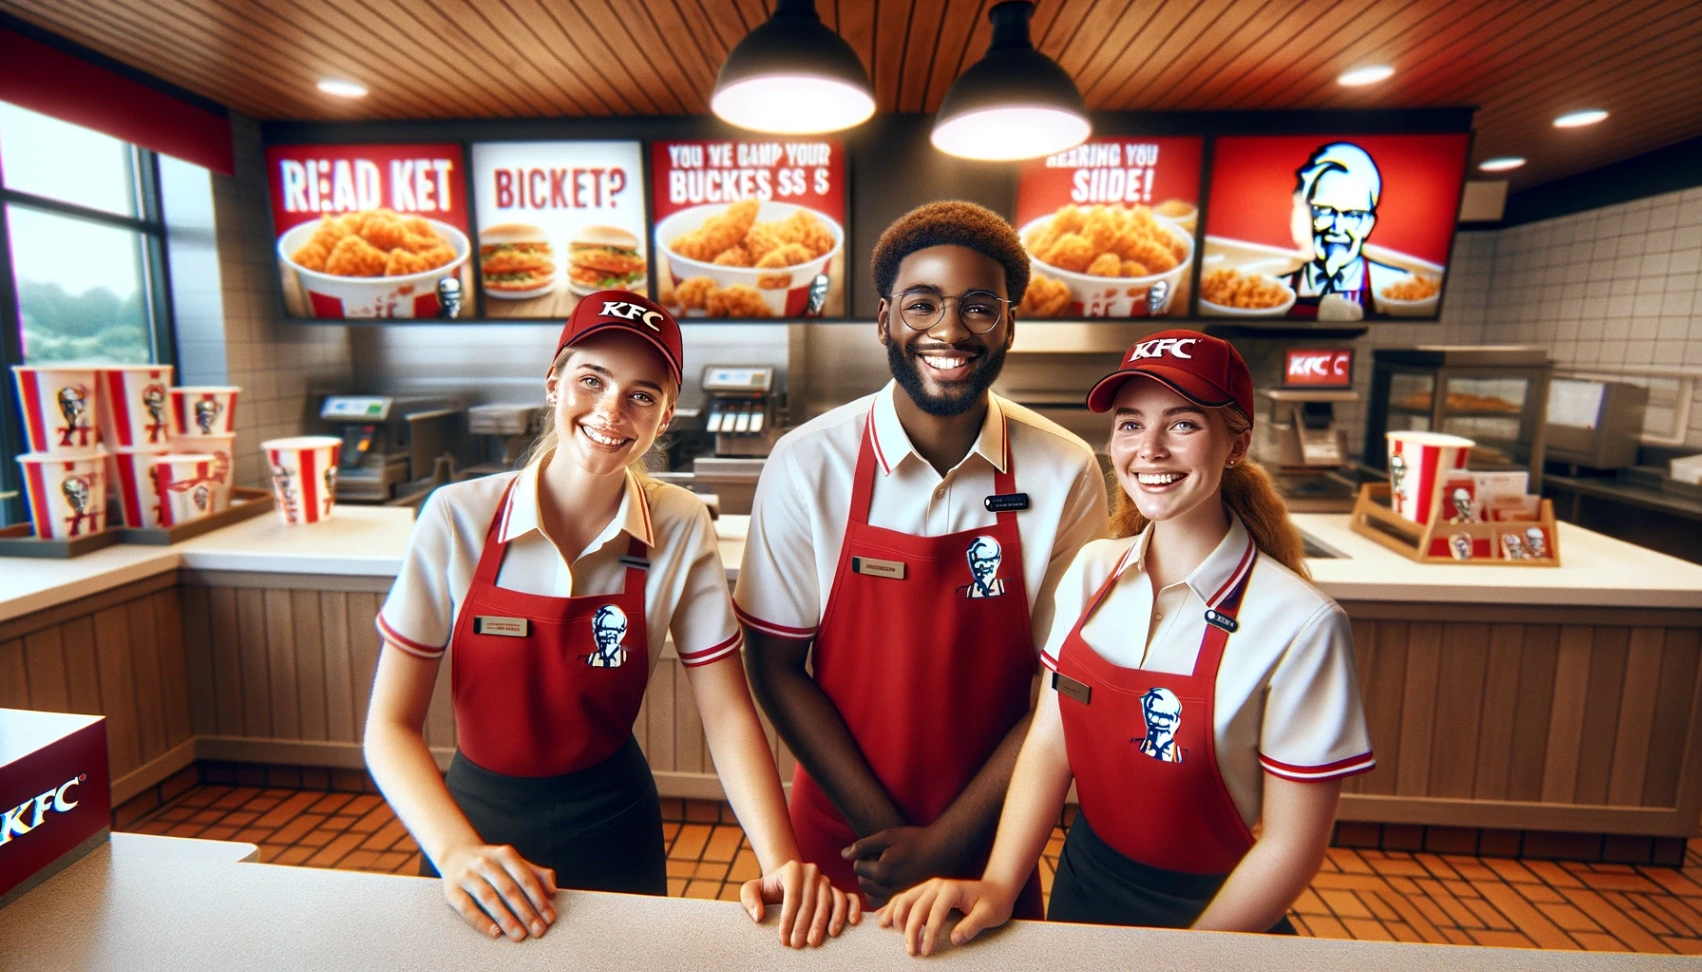 KFC - Apprenez comment postuler pour des postes vacants